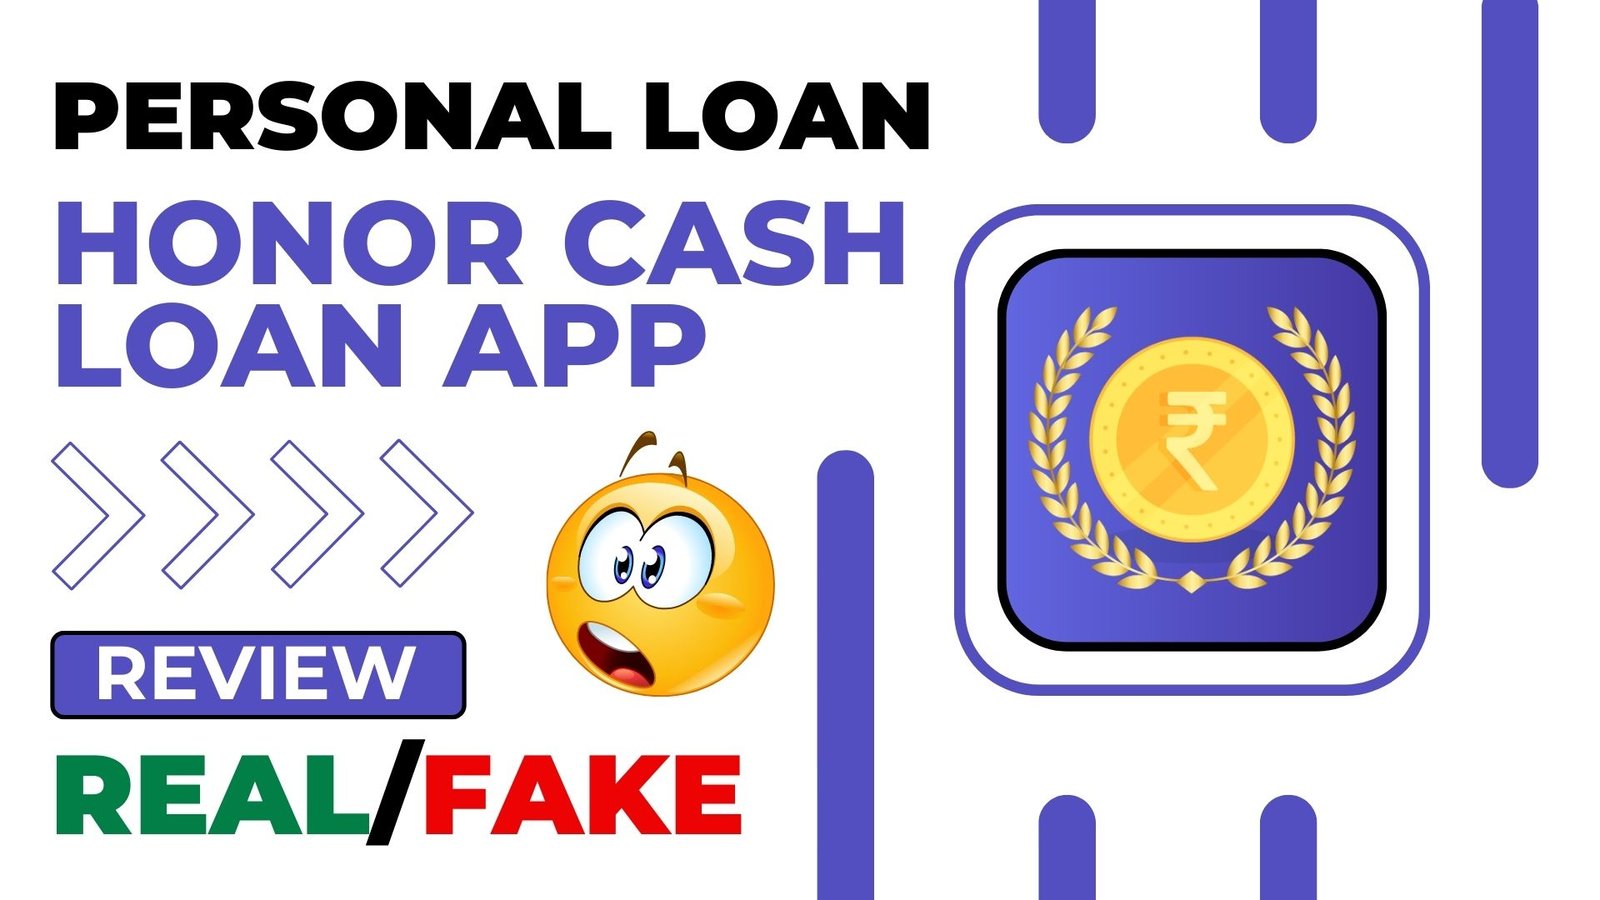 Honor Cash Loan App Review